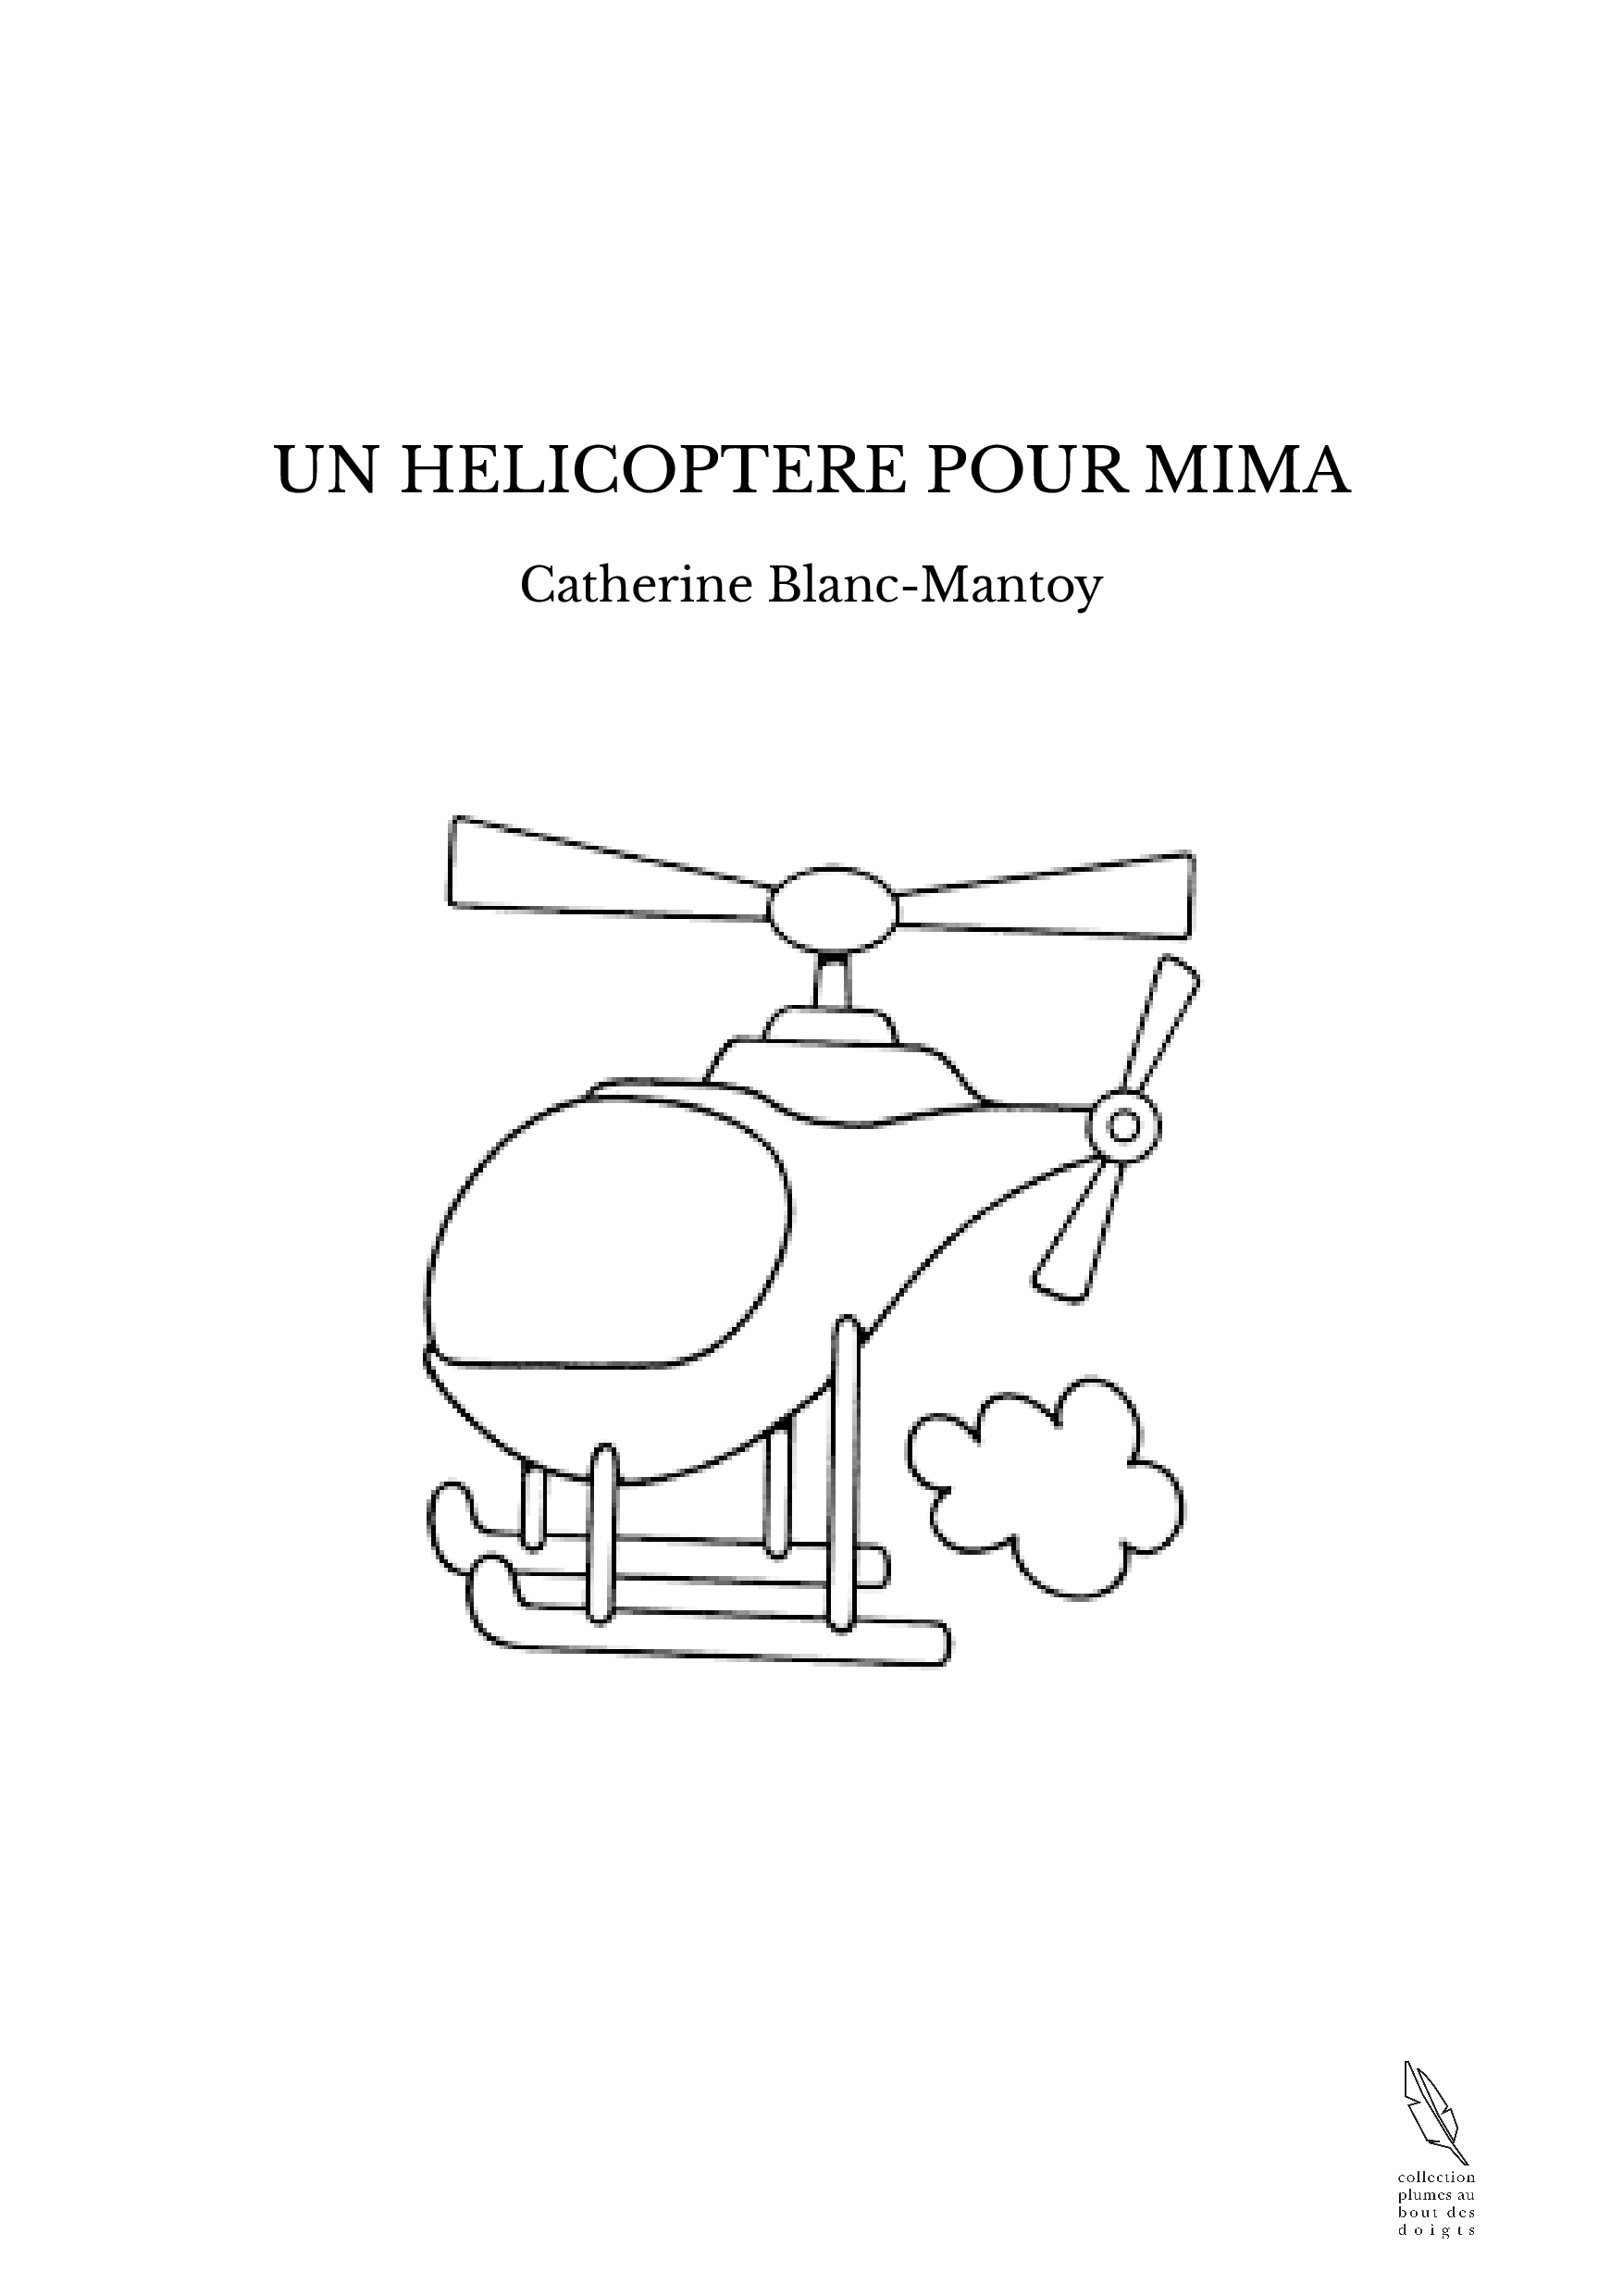 UN HELICOPTERE POUR MIMA